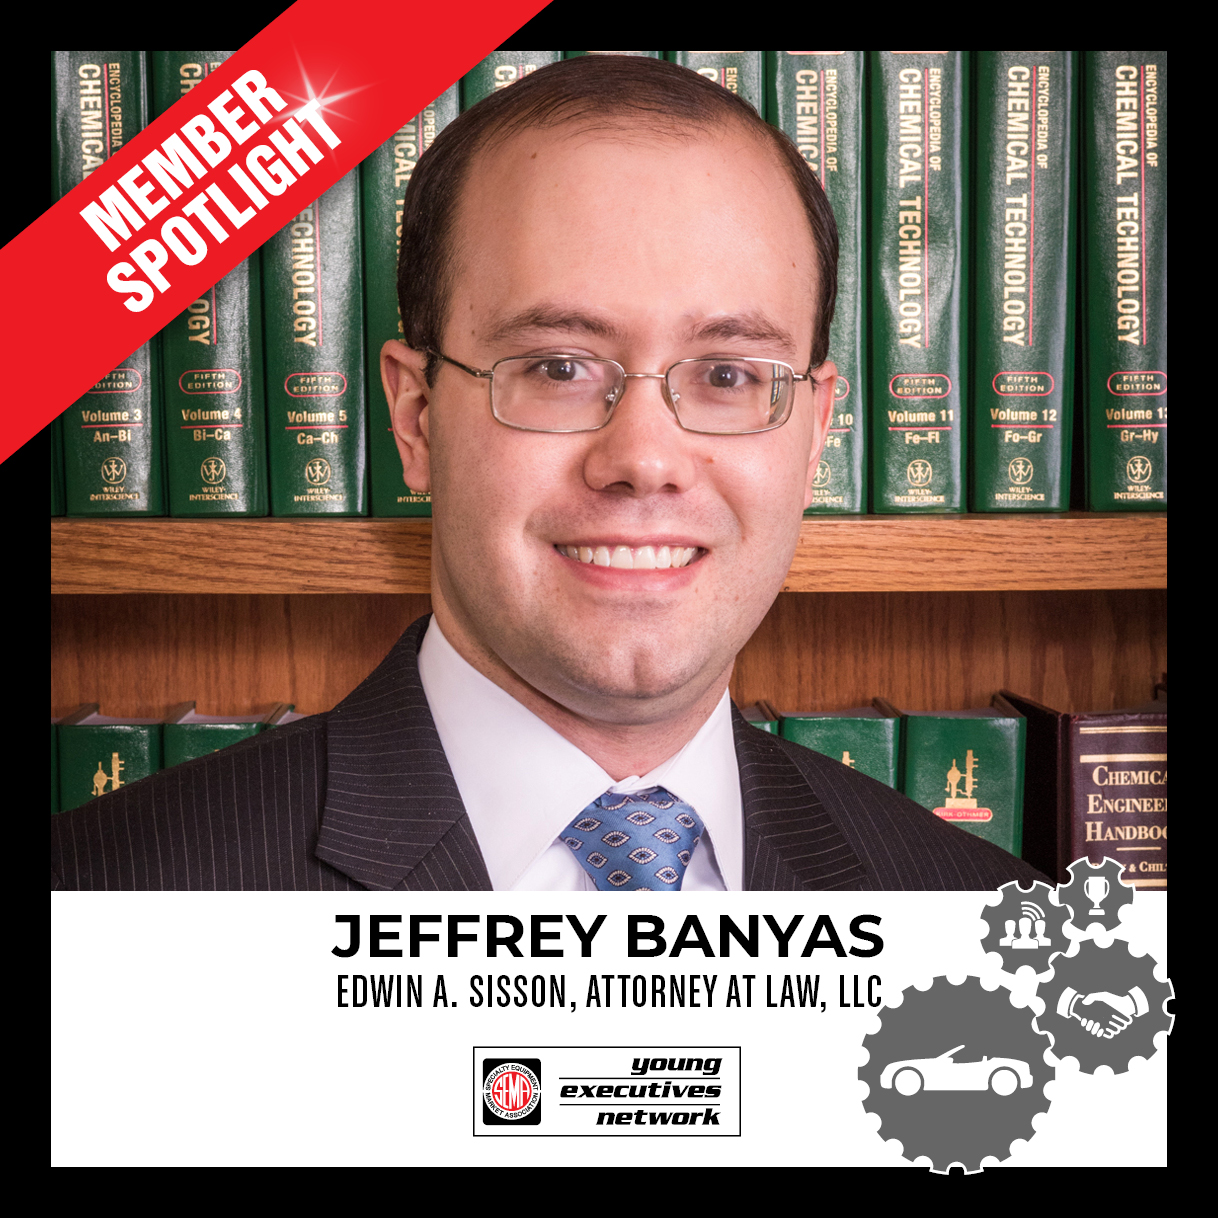 FLN Member Spotlight - Jeffrey Banyas